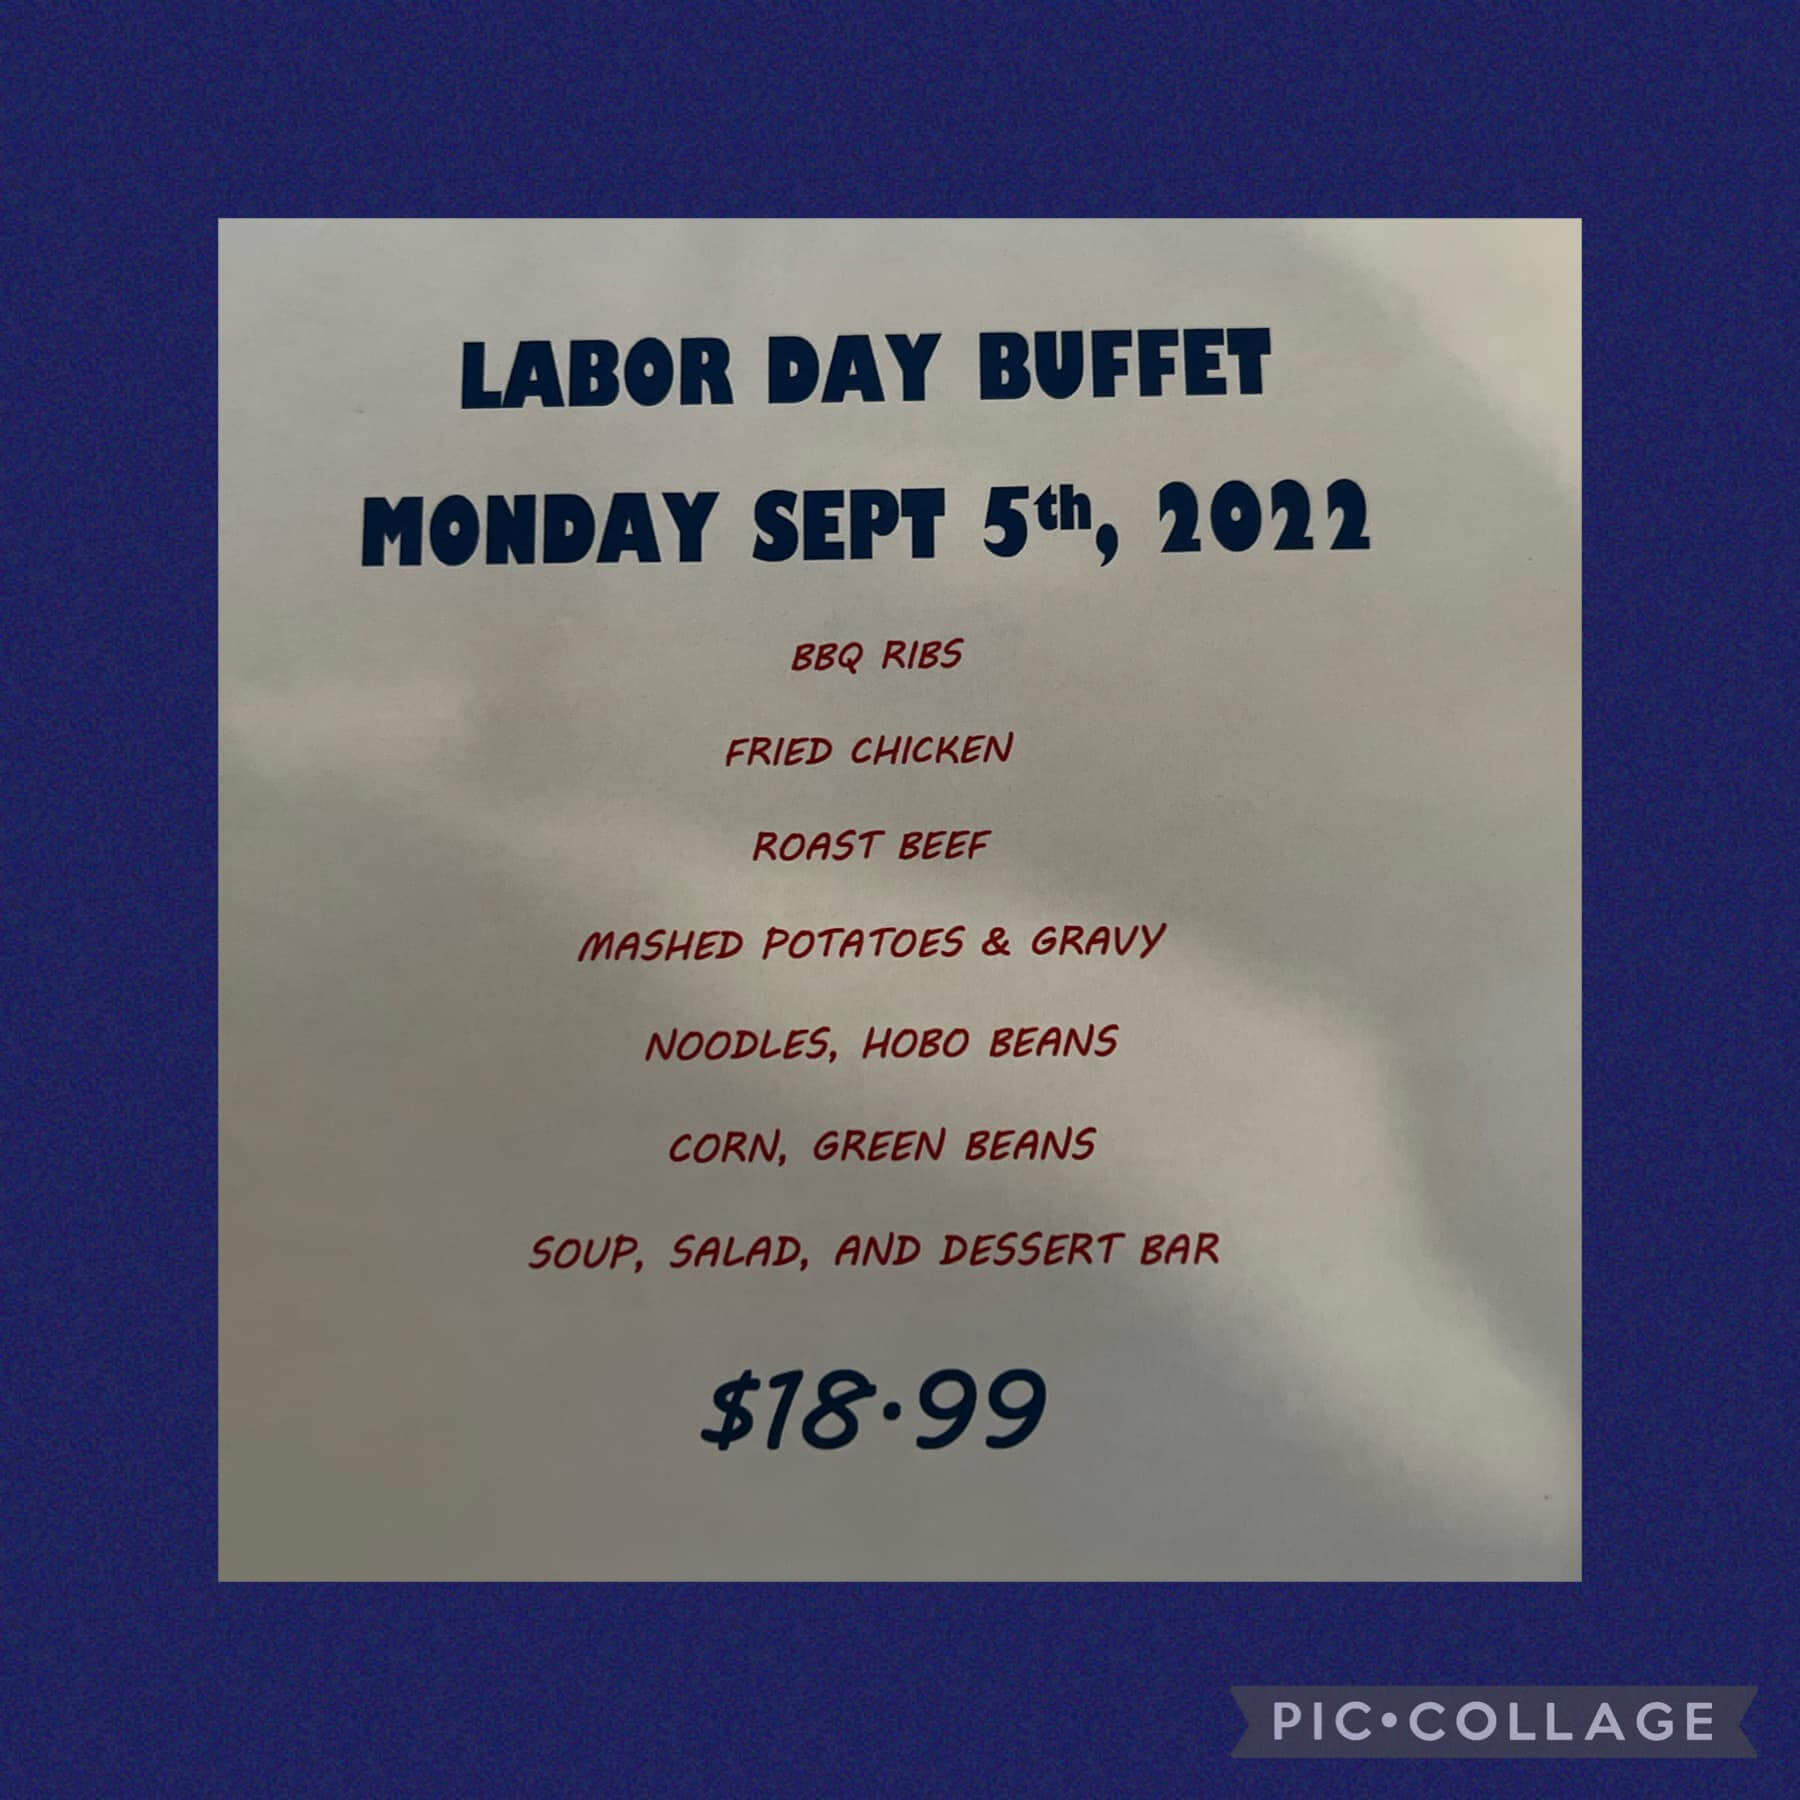 Penn Alps Restaurant & Craft Shop: Labor Day Buffet